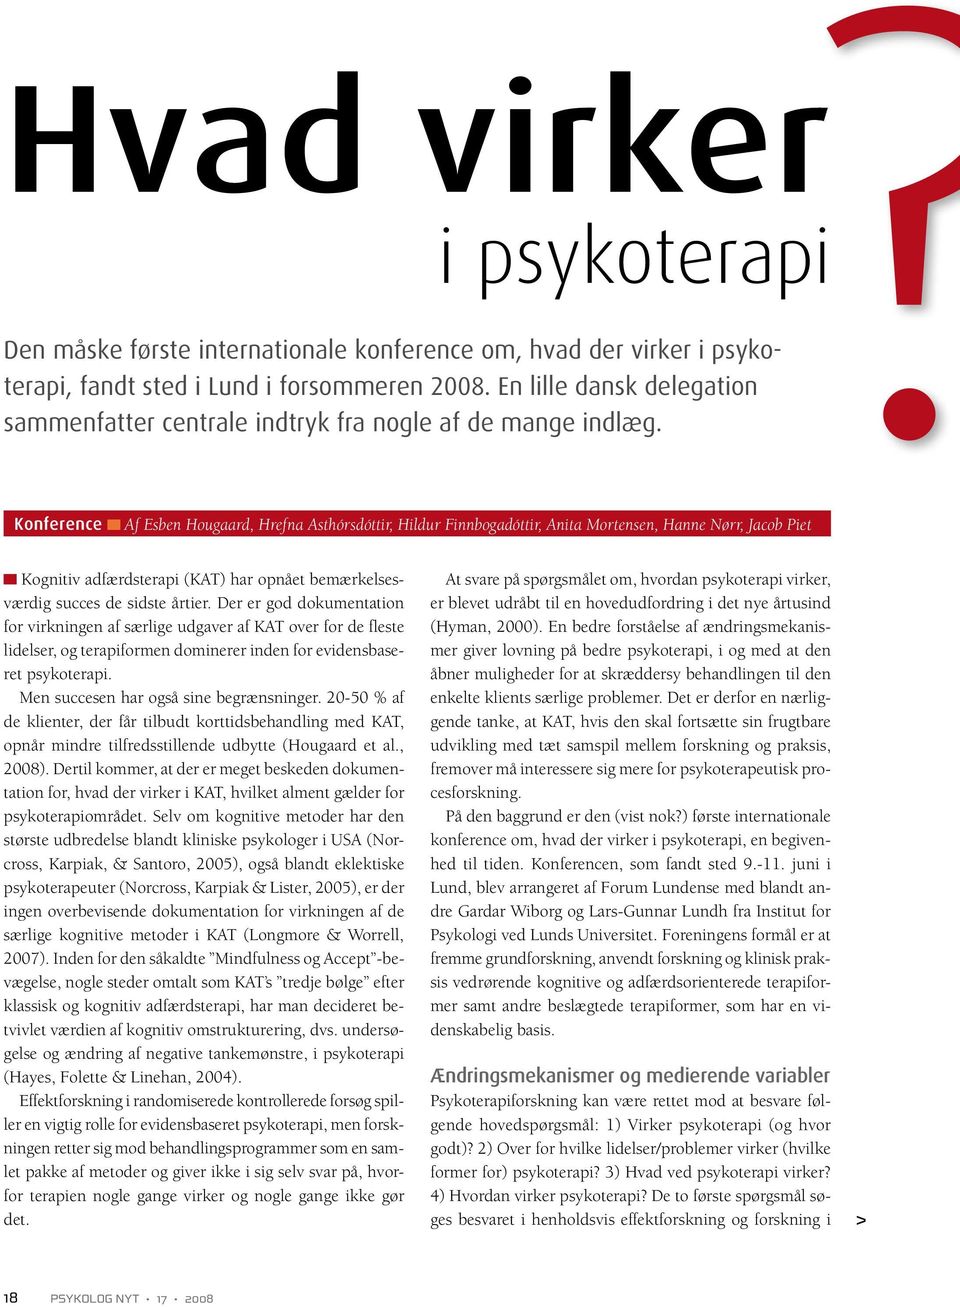 uddanne anspore zebra Hvad virker. psykoterapi. - PDF Free Download